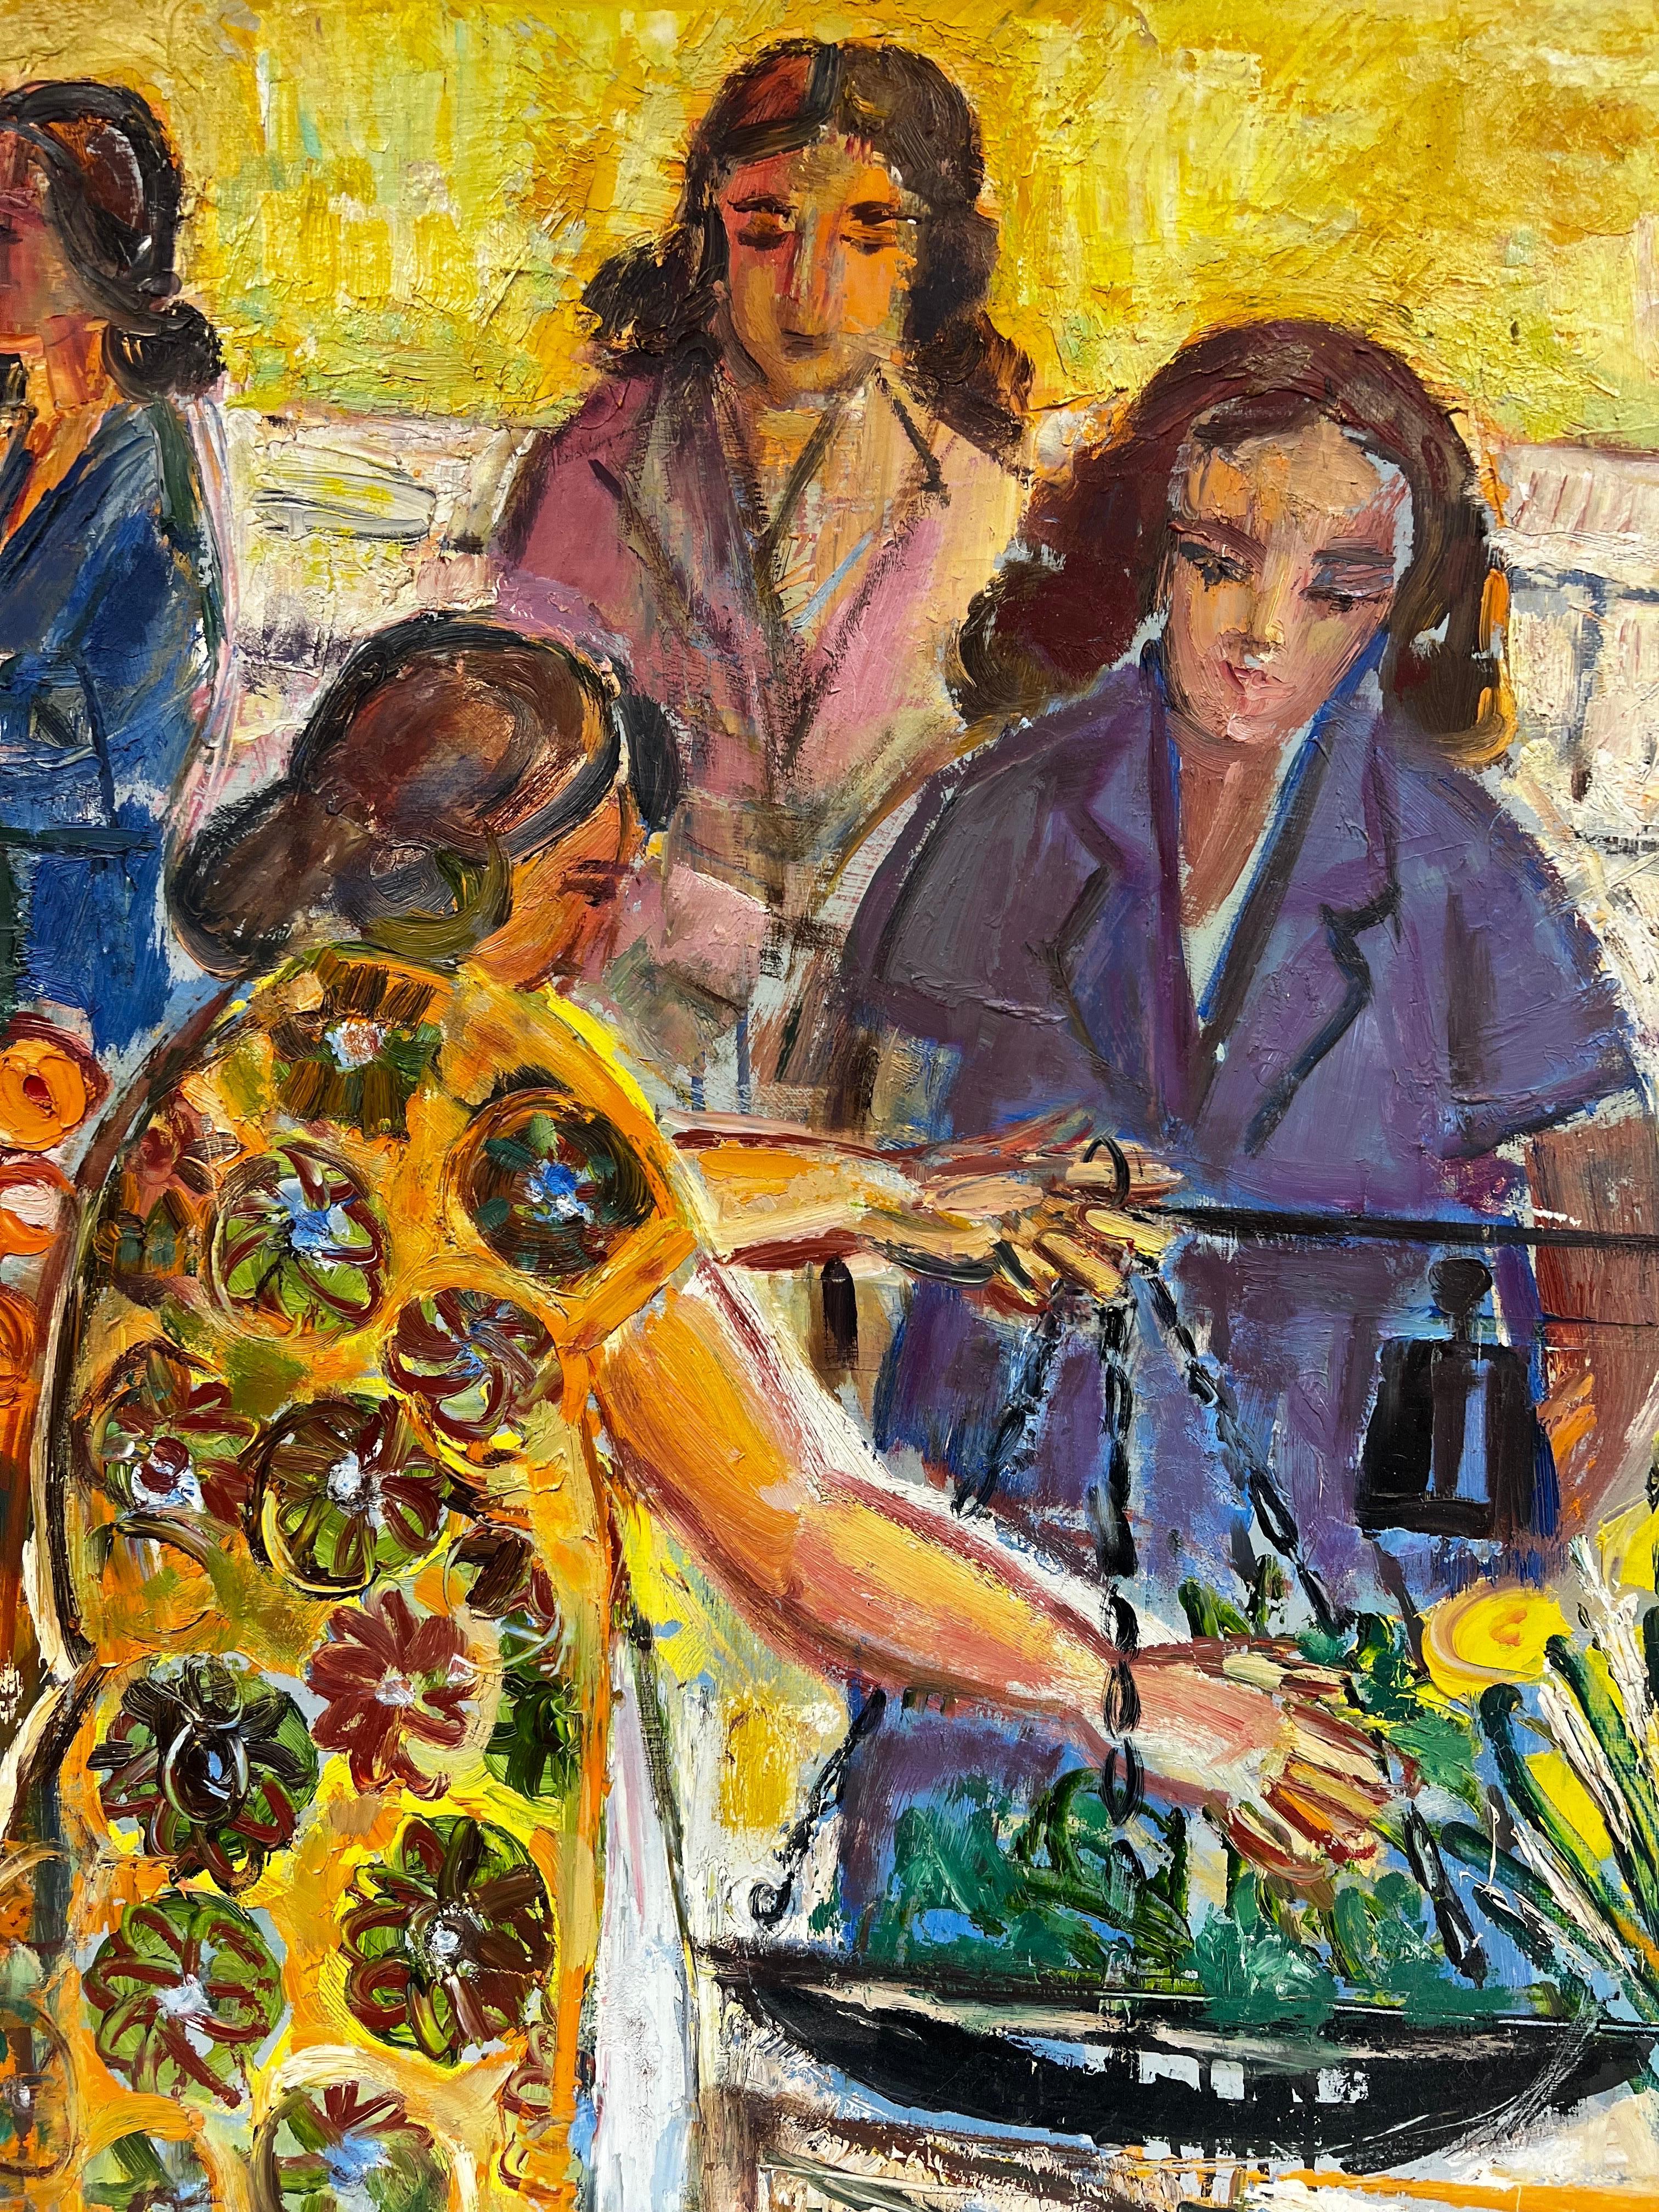 Menton South of France Femmes au Marché aux Fleurs Stall des Années 1960 Huile Française - Post-impressionnisme Painting par Édouard Righetti (1924-2001)